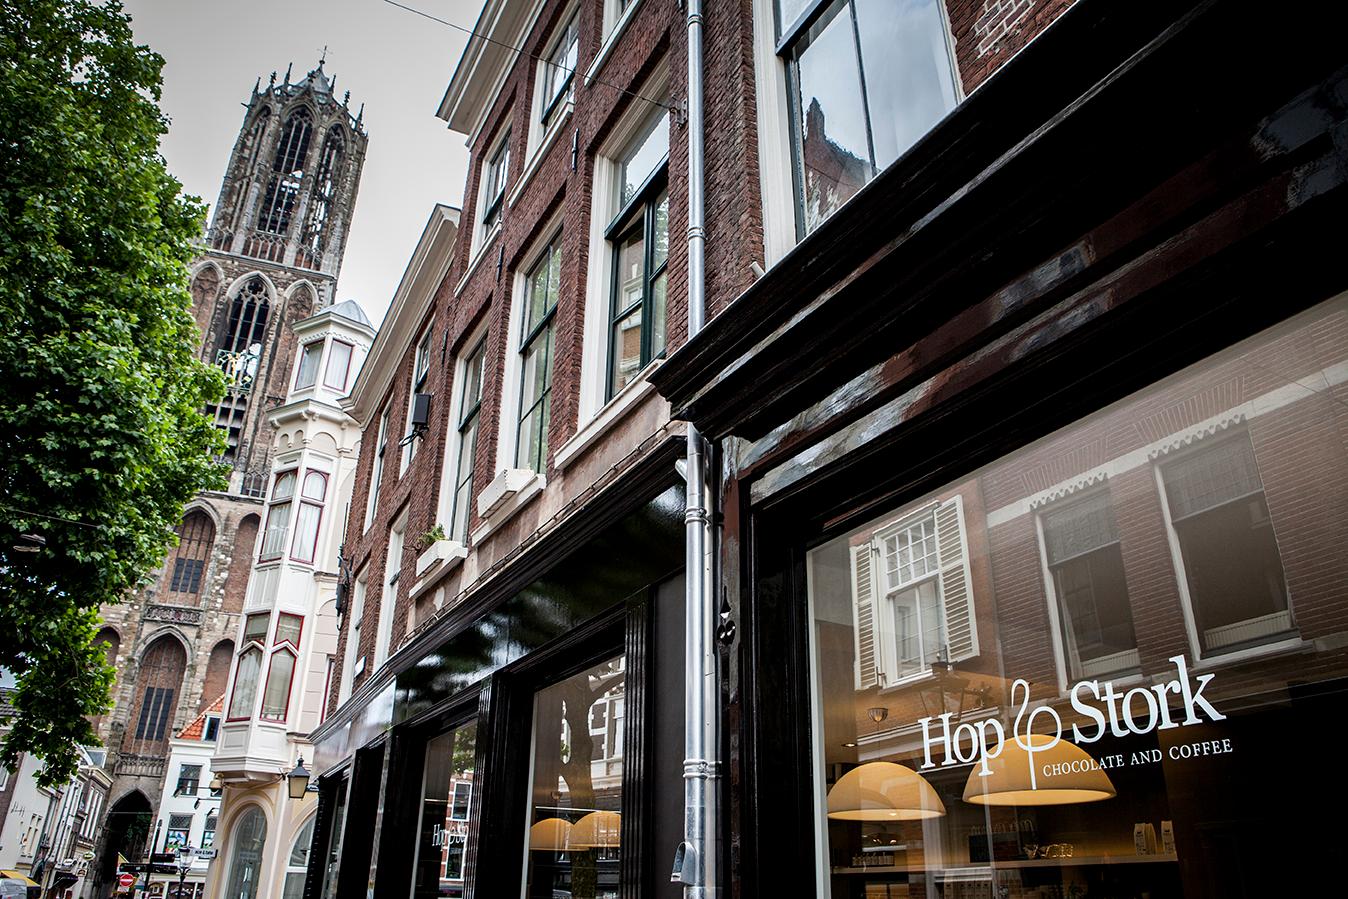 Foto Hop & Stork in Utrecht, Einkaufen, Delikatessen & spezialitäten - #1